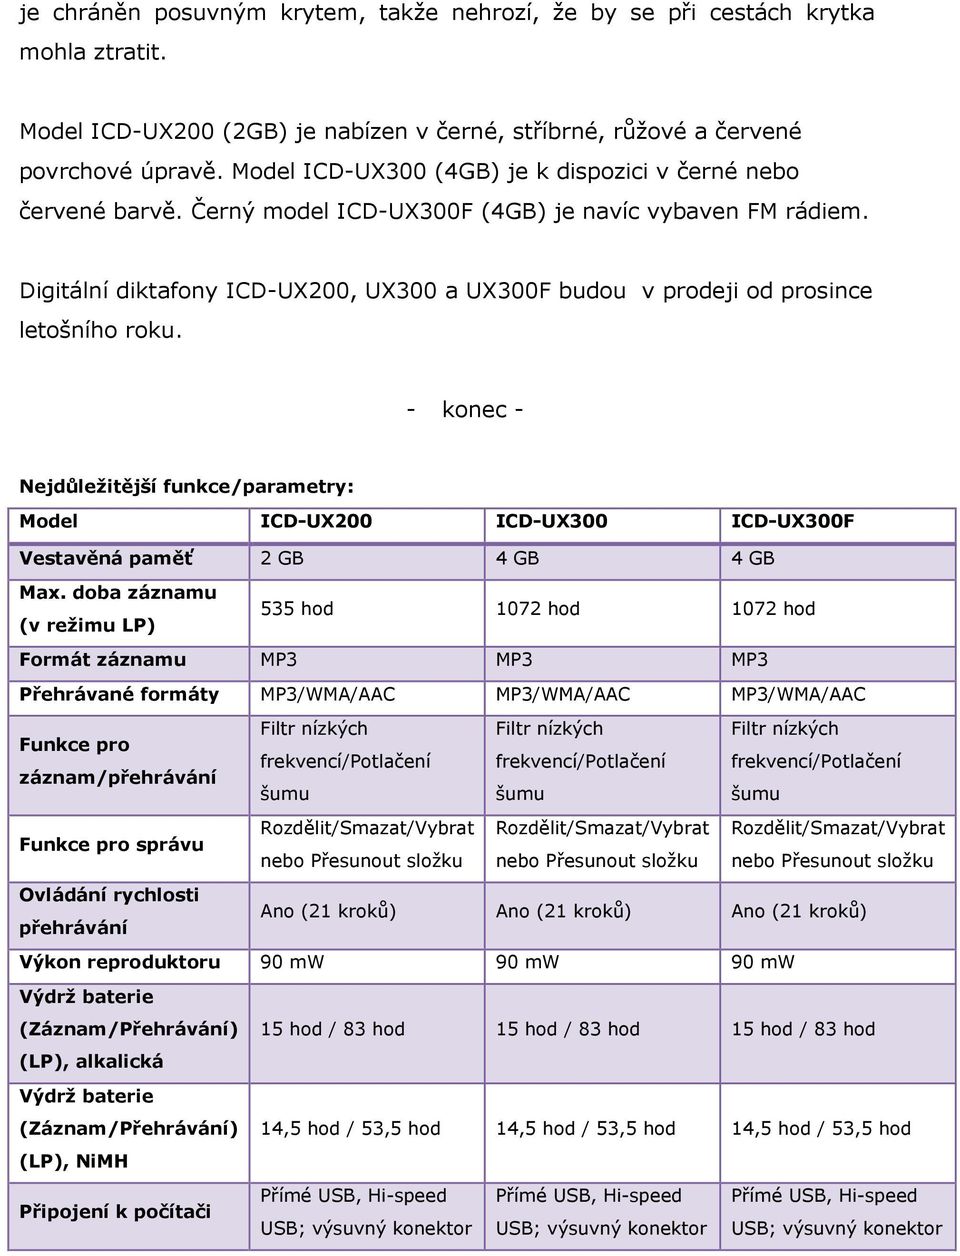 Digitální diktafony ICD-UX200, UX300 a UX300F budou v prodeji od prosince letošního roku.